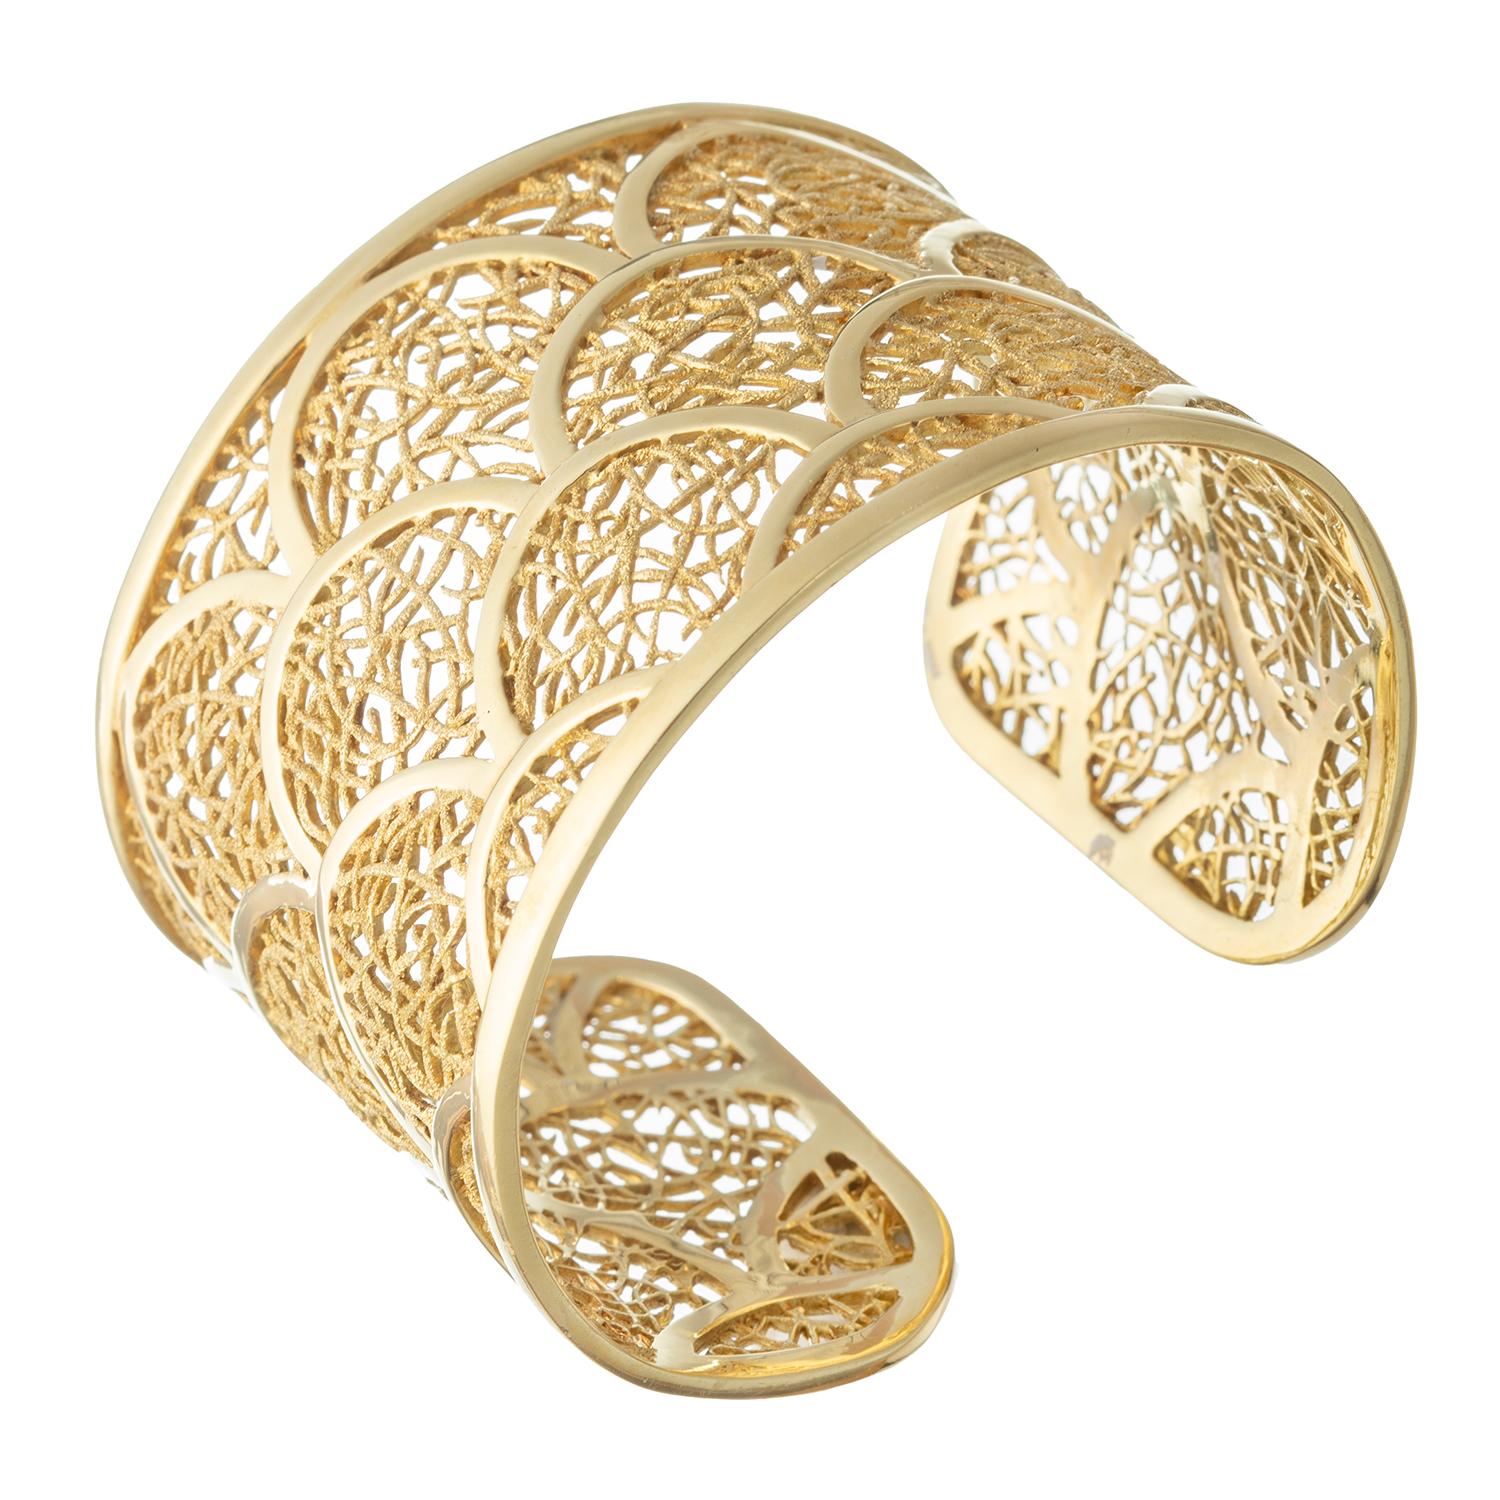 Lassen Sie sich von der zeitlosen Schönheit des Nicholas Varney Porto Nuevo Manschettenarmbandes aus 18 Karat Gold verzaubern. Dieses spektakuläre Stück zeigt ein außergewöhnliches Design mit organischen Gitterabschnitten, die durch polierte goldene